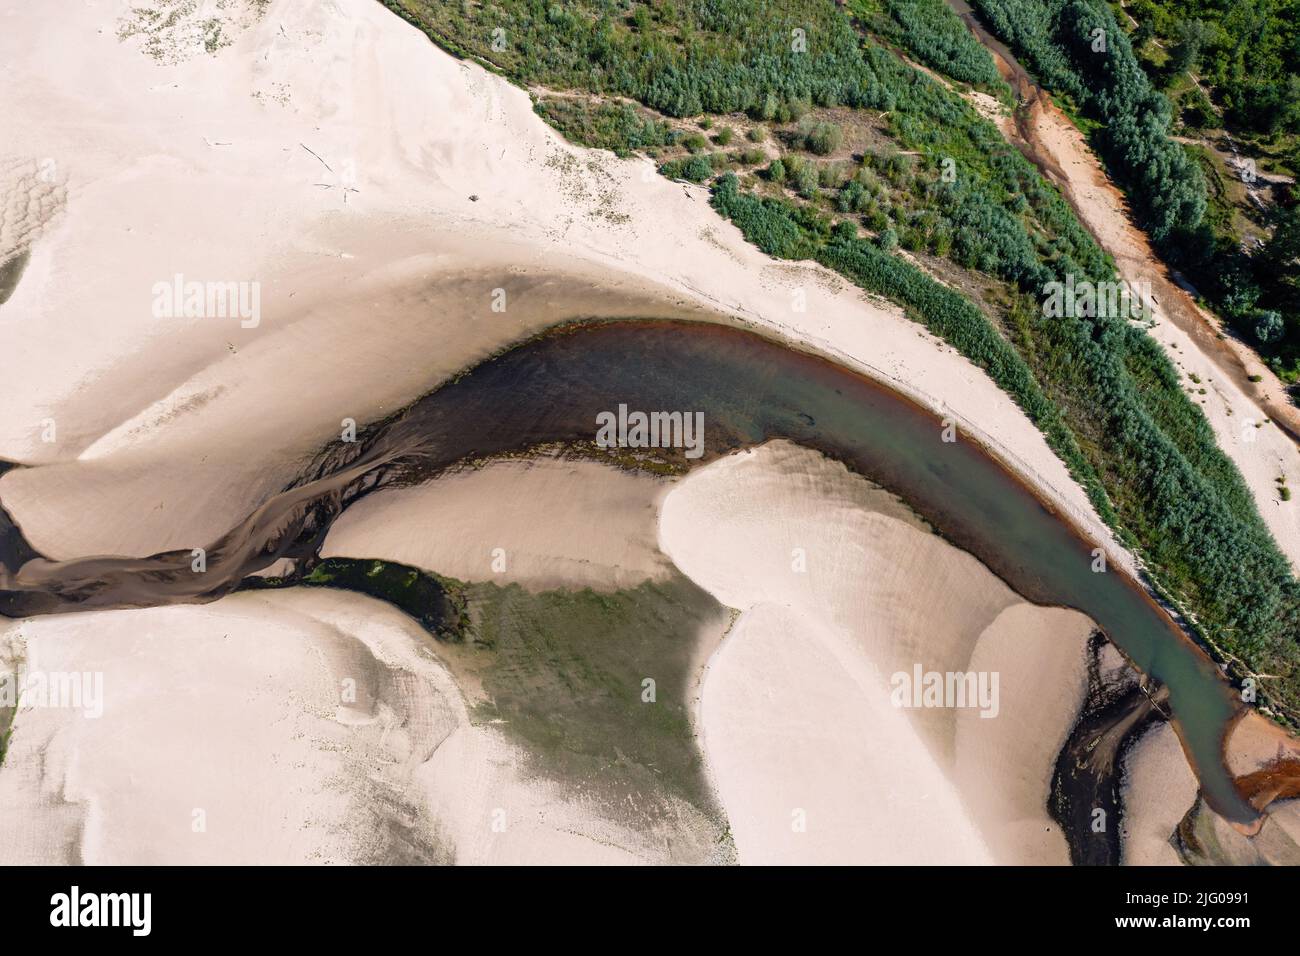 Basso livello d'acqua nel fiume Vistula, effetto della siccità vista dal punto di vista dell'occhio dell'uccello Foto Stock